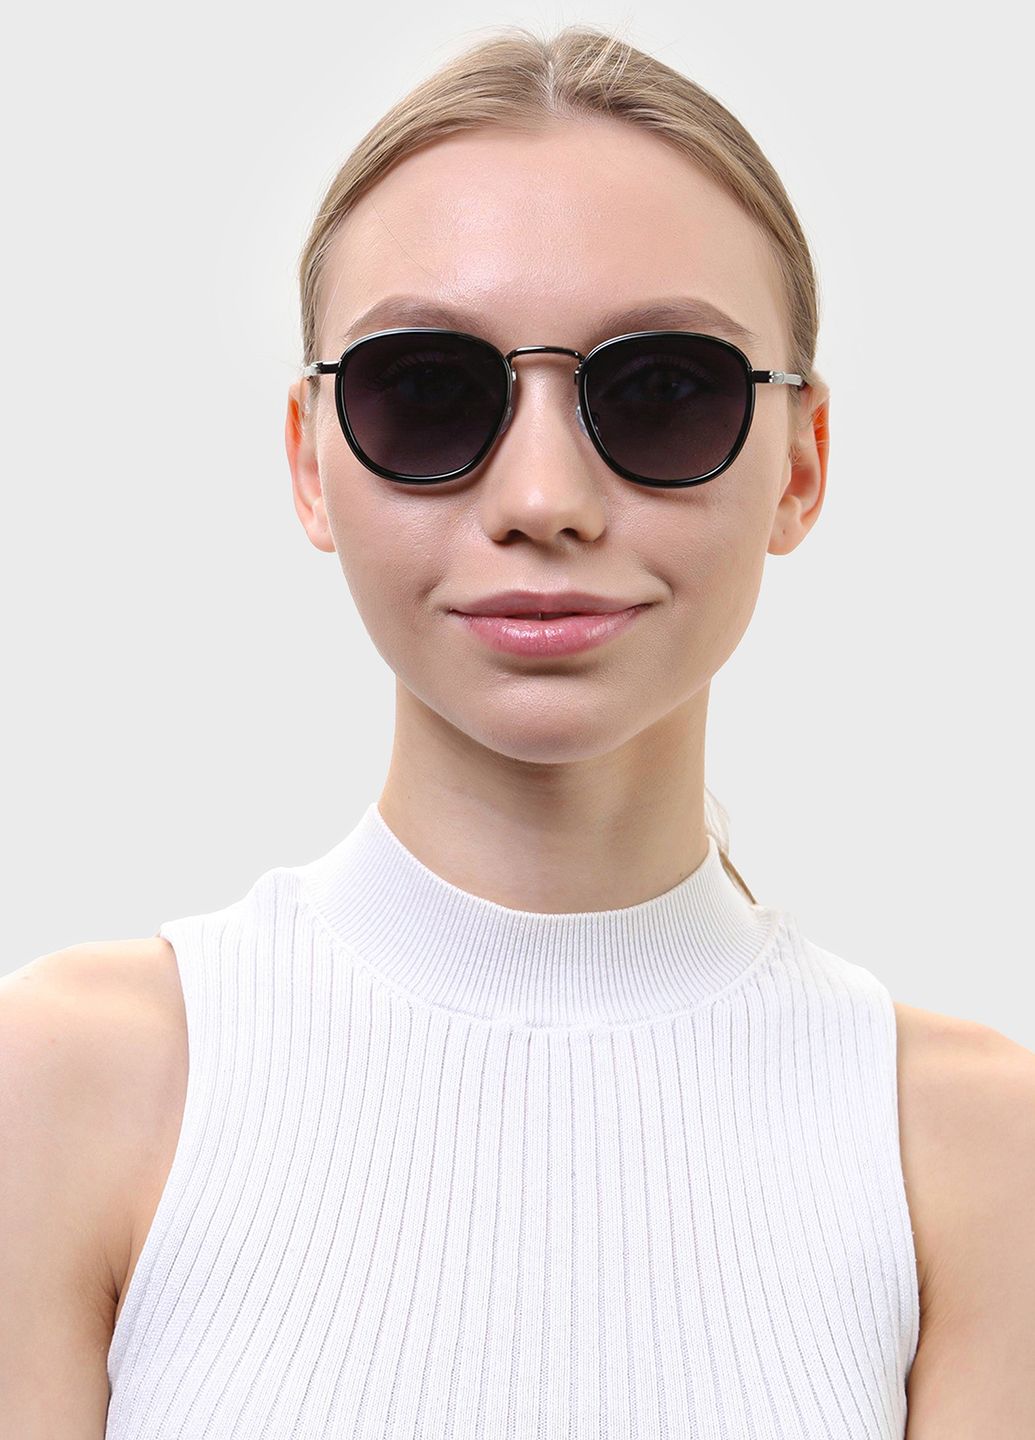 Купить Солнцезащитные очки c поляризацией HAVVS HV68045 170012 - Черный в интернет-магазине